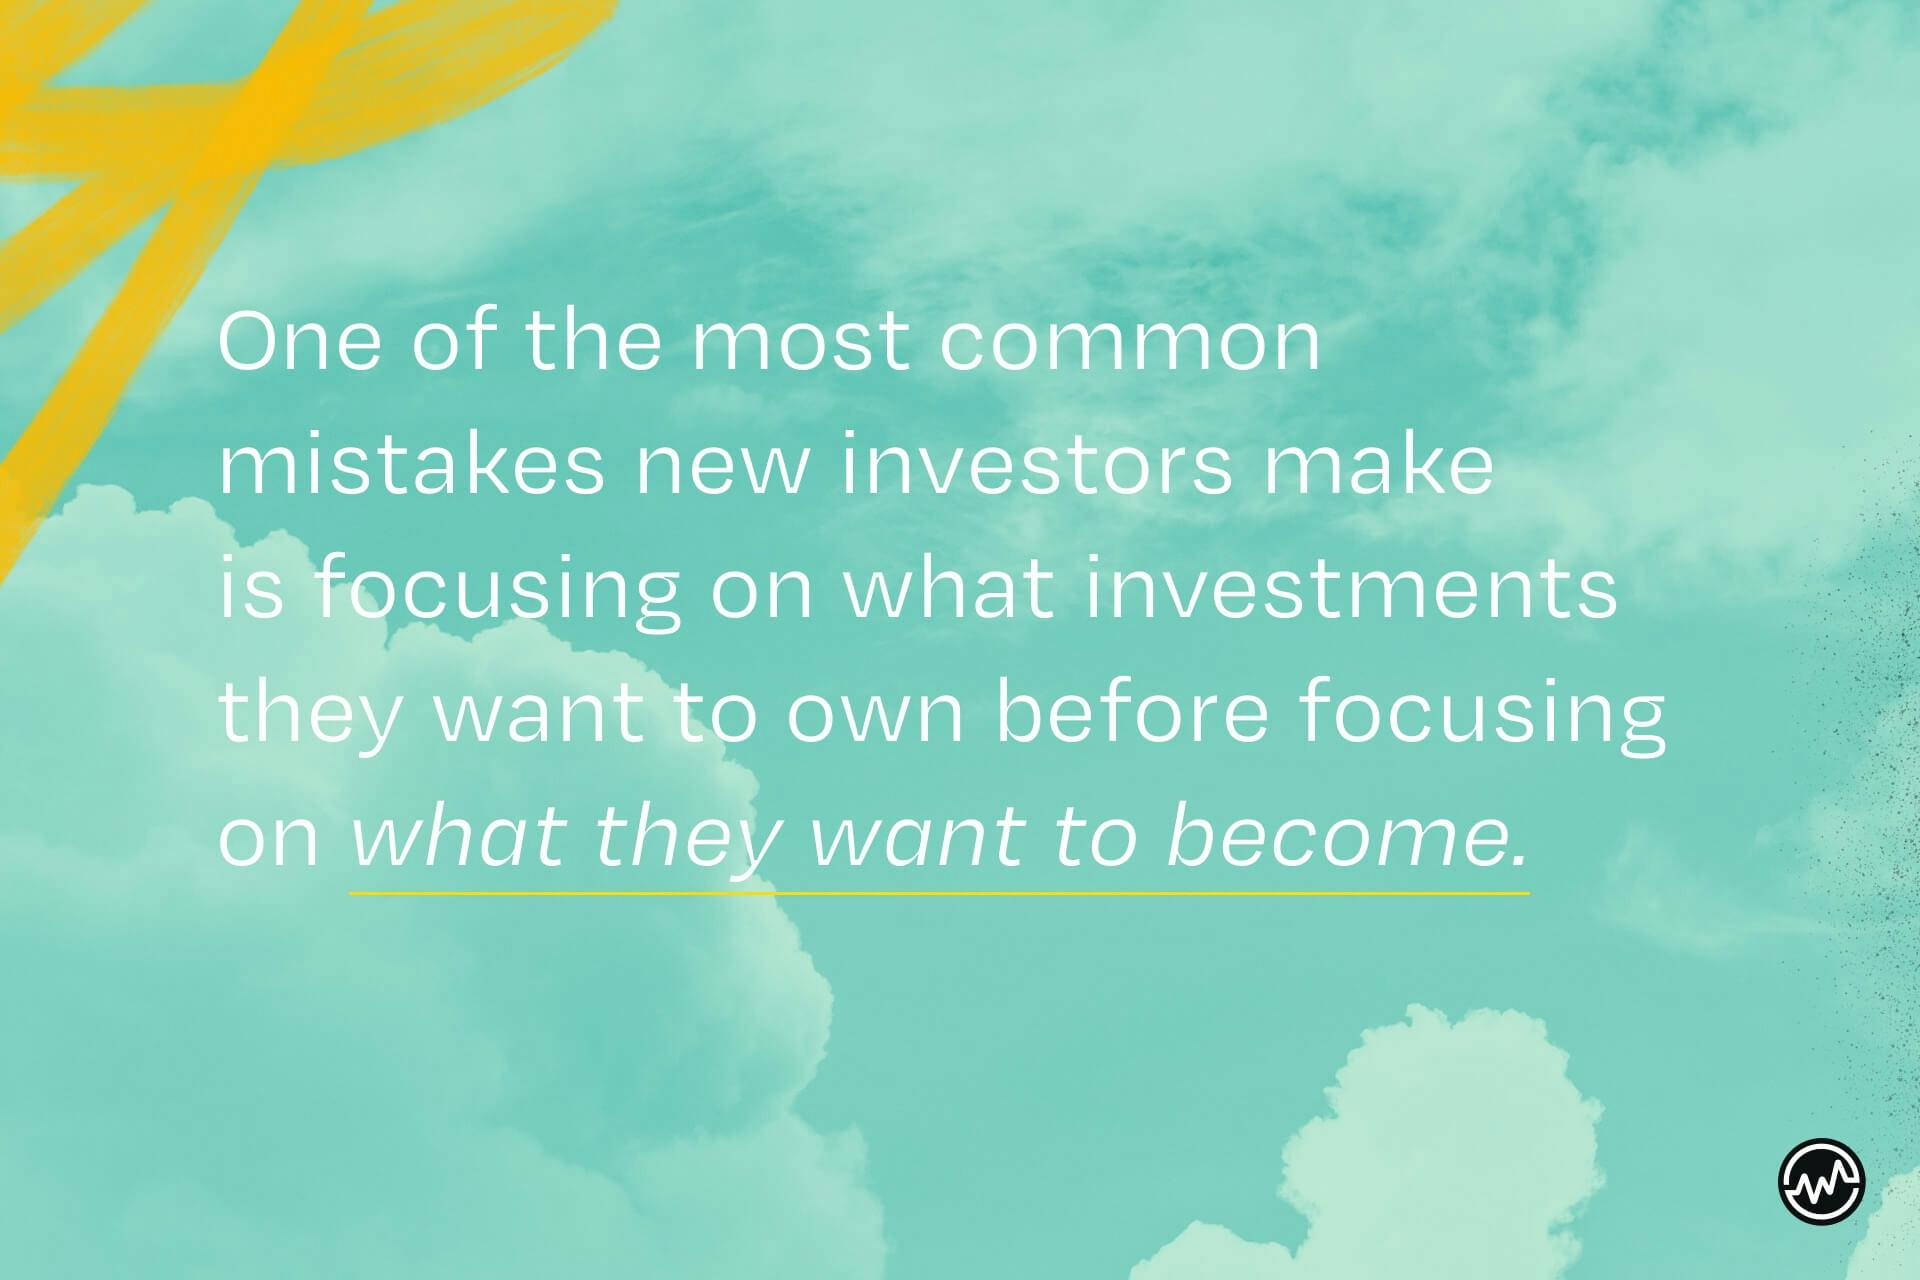 Concentrati su ciò che vuoi diventare — non su quali investimenti vuoi possedere